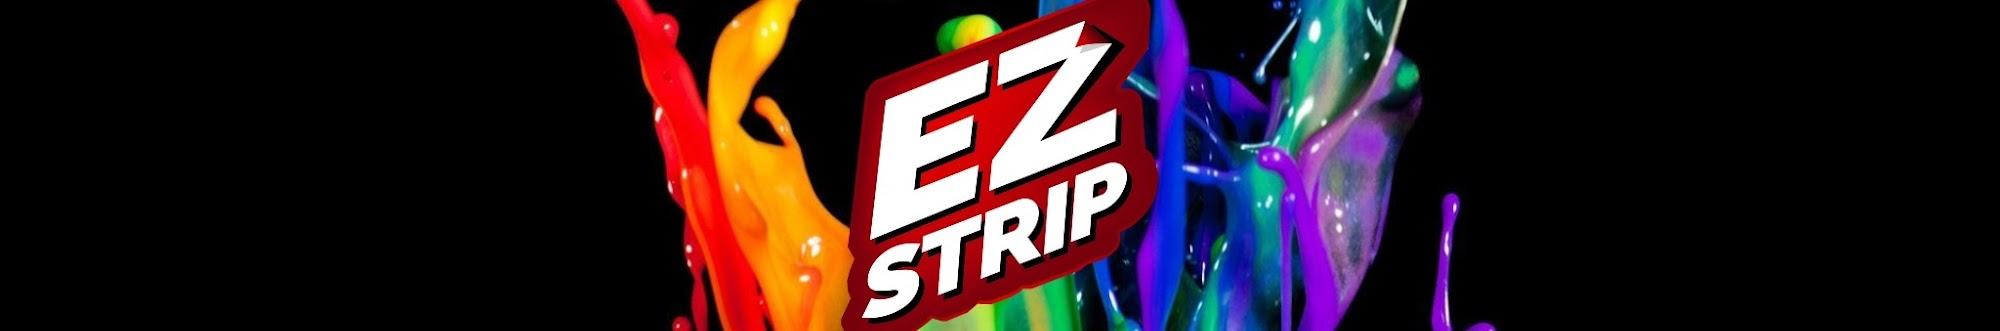 EZ Strip